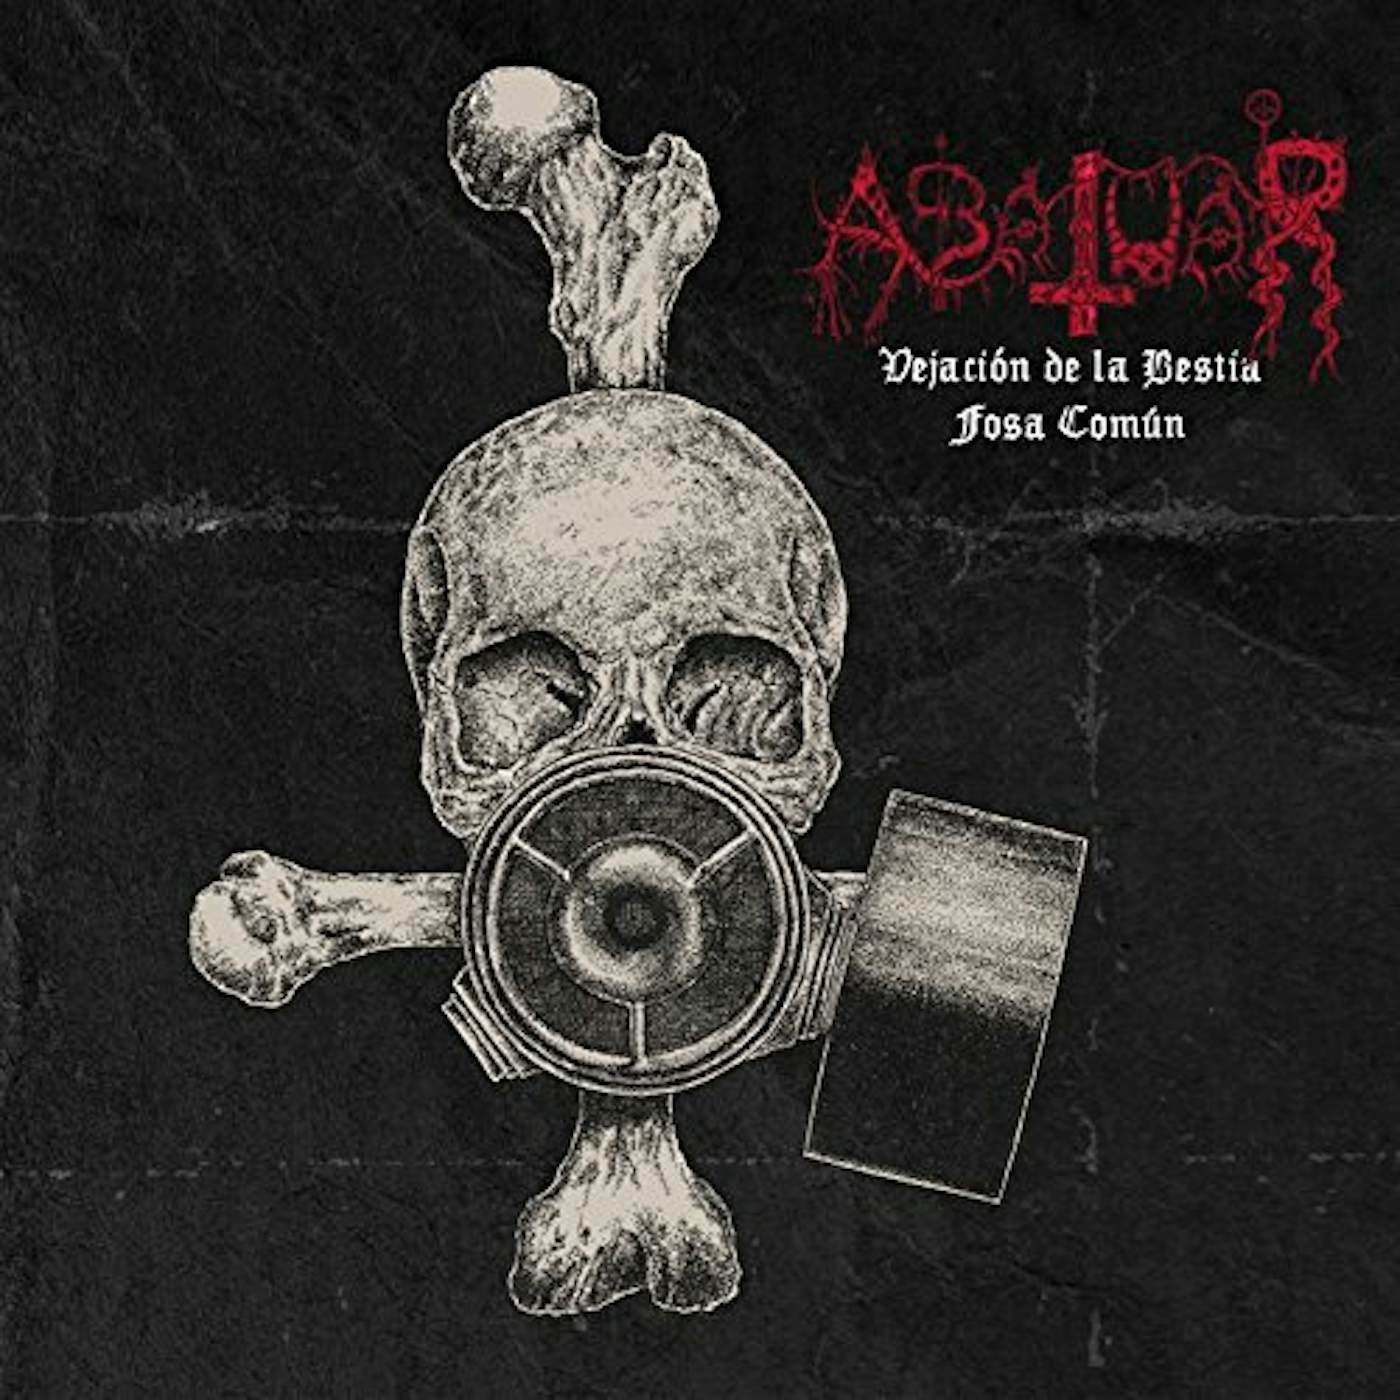 Abatuar VEJACION DE LA BESTIA / FOSA COMUN CD